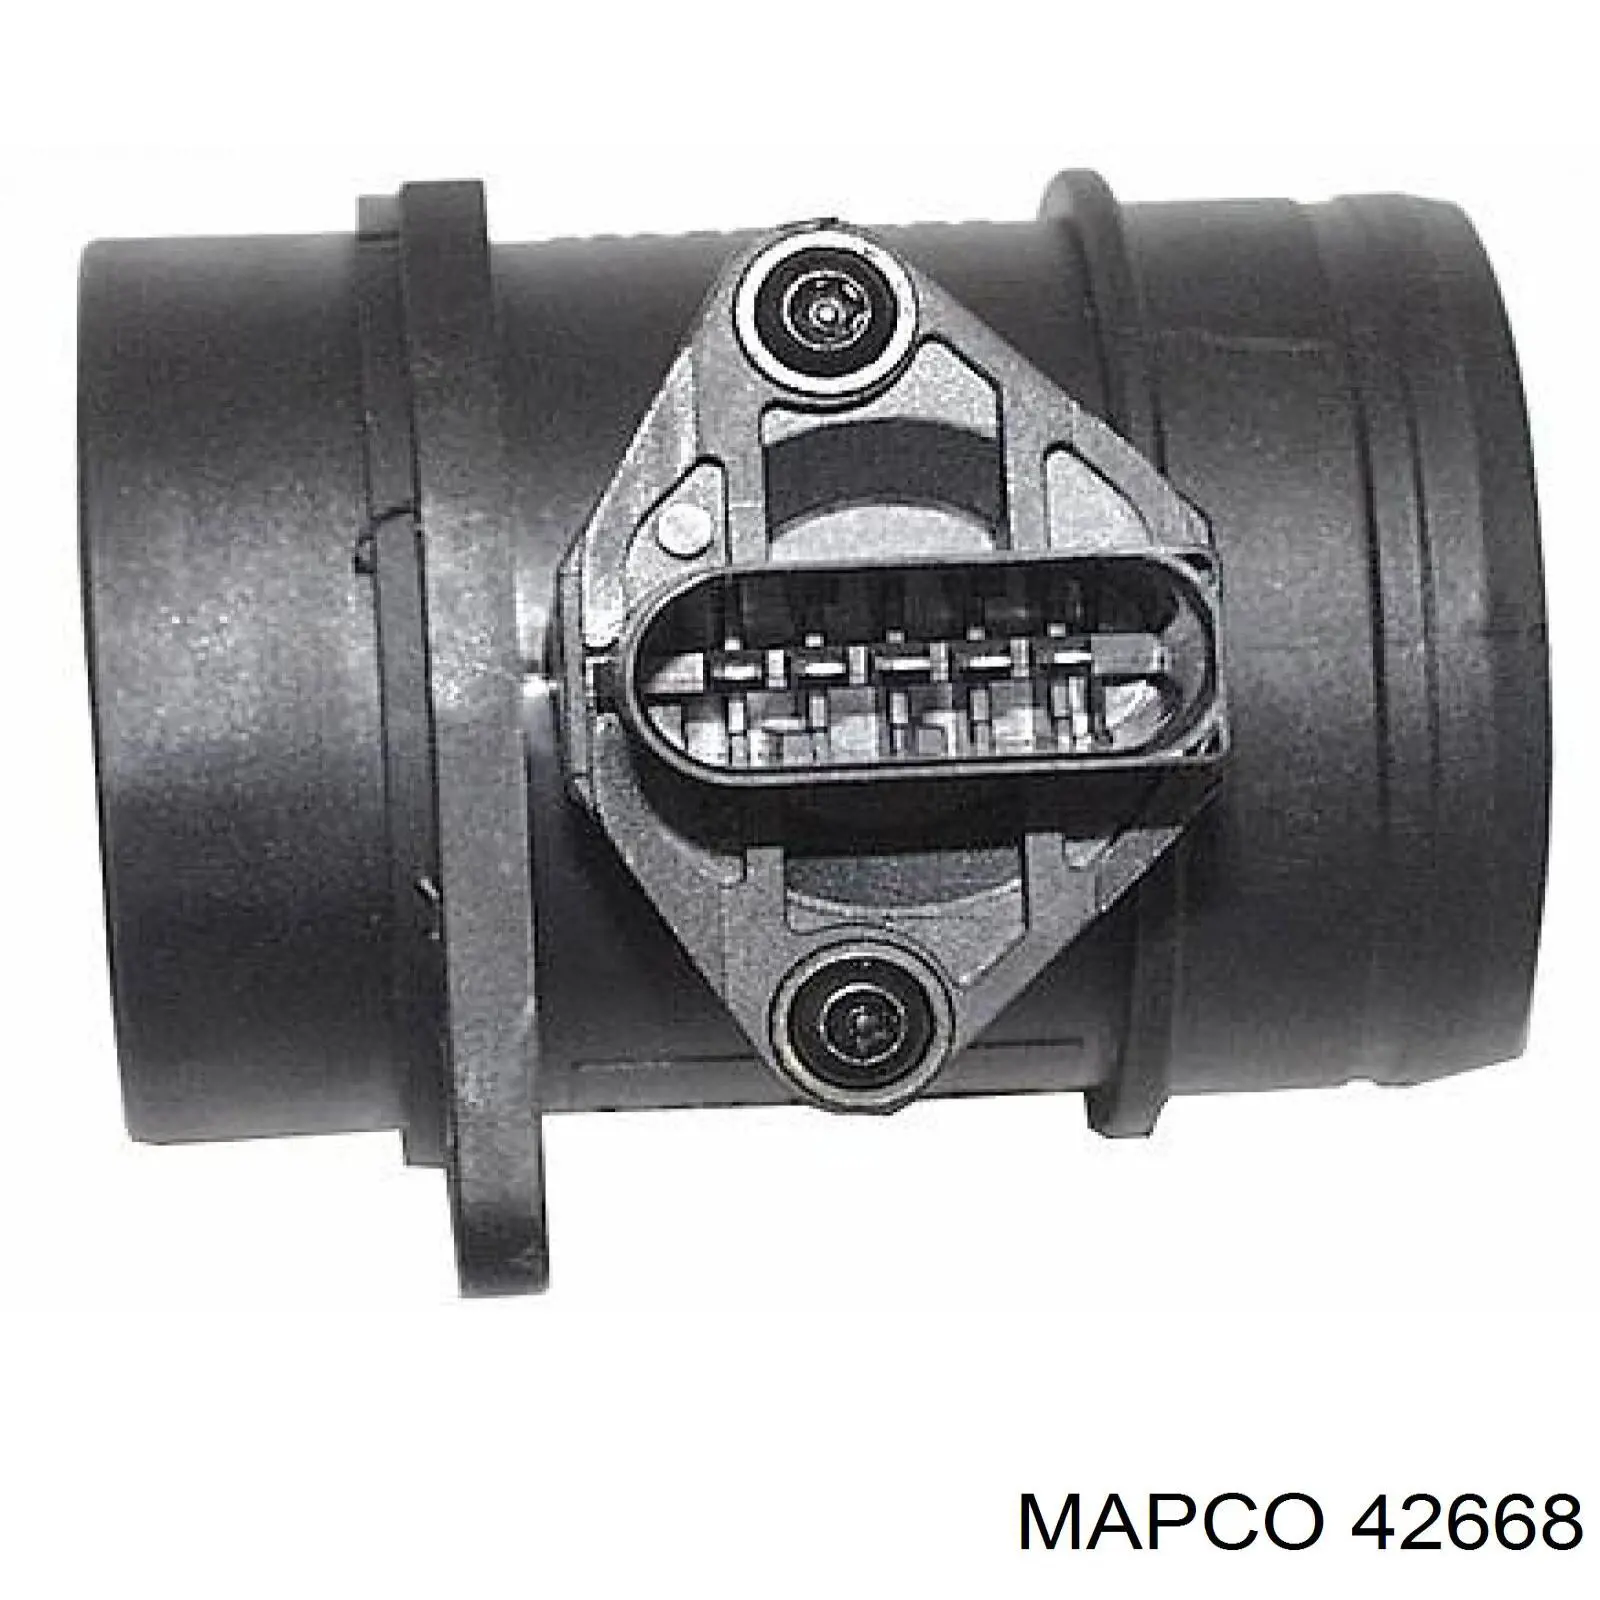 Sensor De Flujo De Aire/Medidor De Flujo (Flujo de Aire Masibo) 42668 Mapco